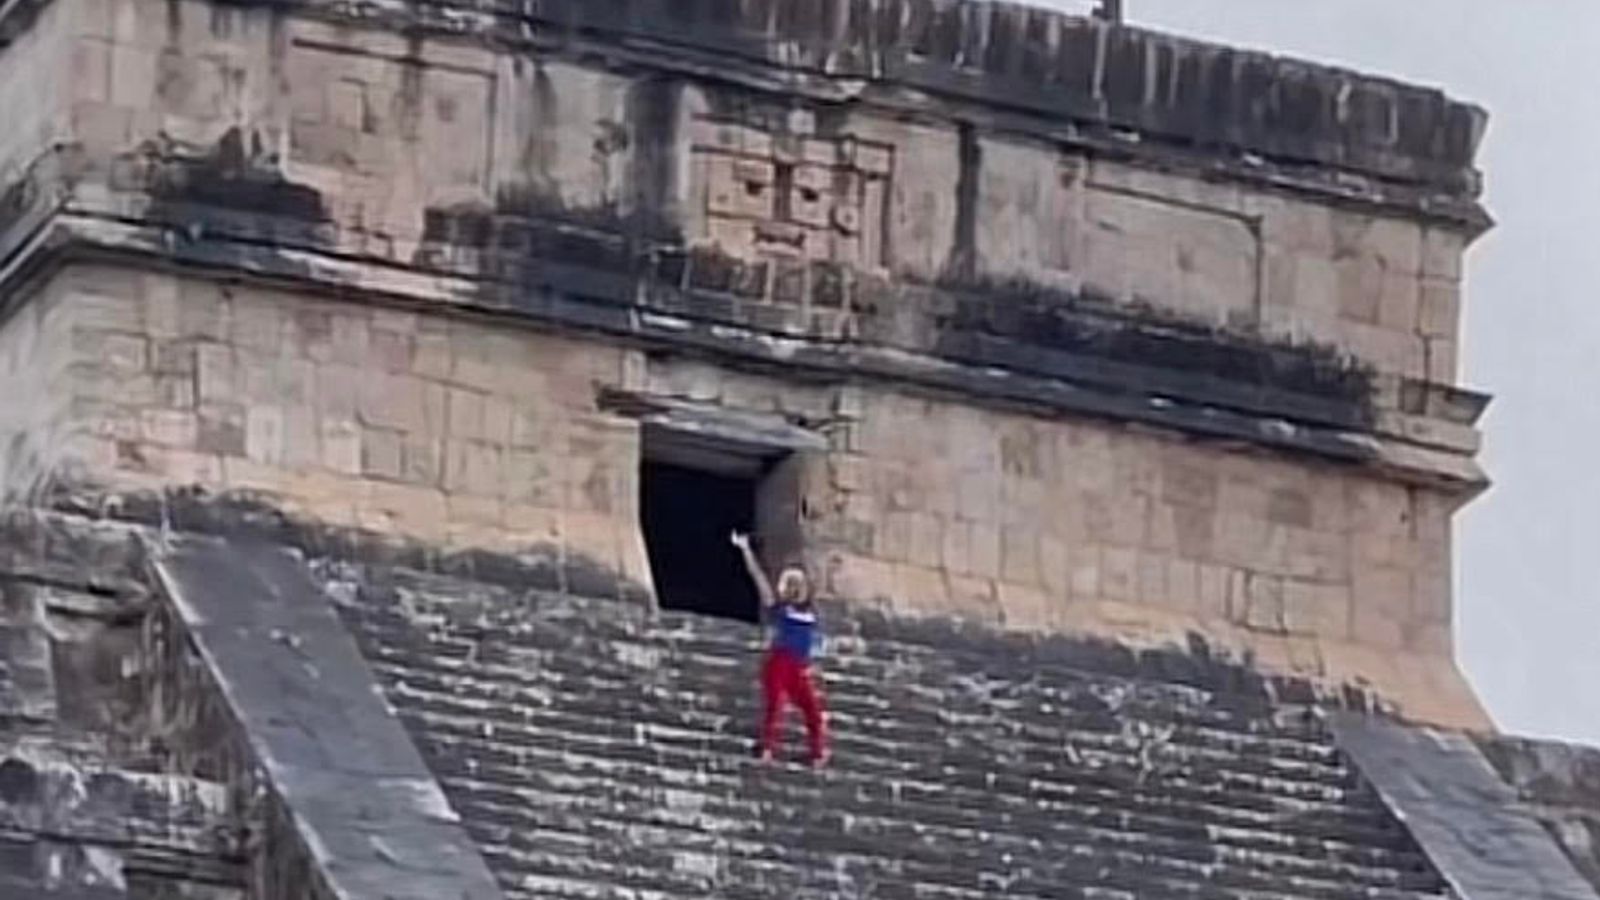 Boos en boos toeristen na het beklimmen van een oude piramide in Mexico |  wereldnieuws